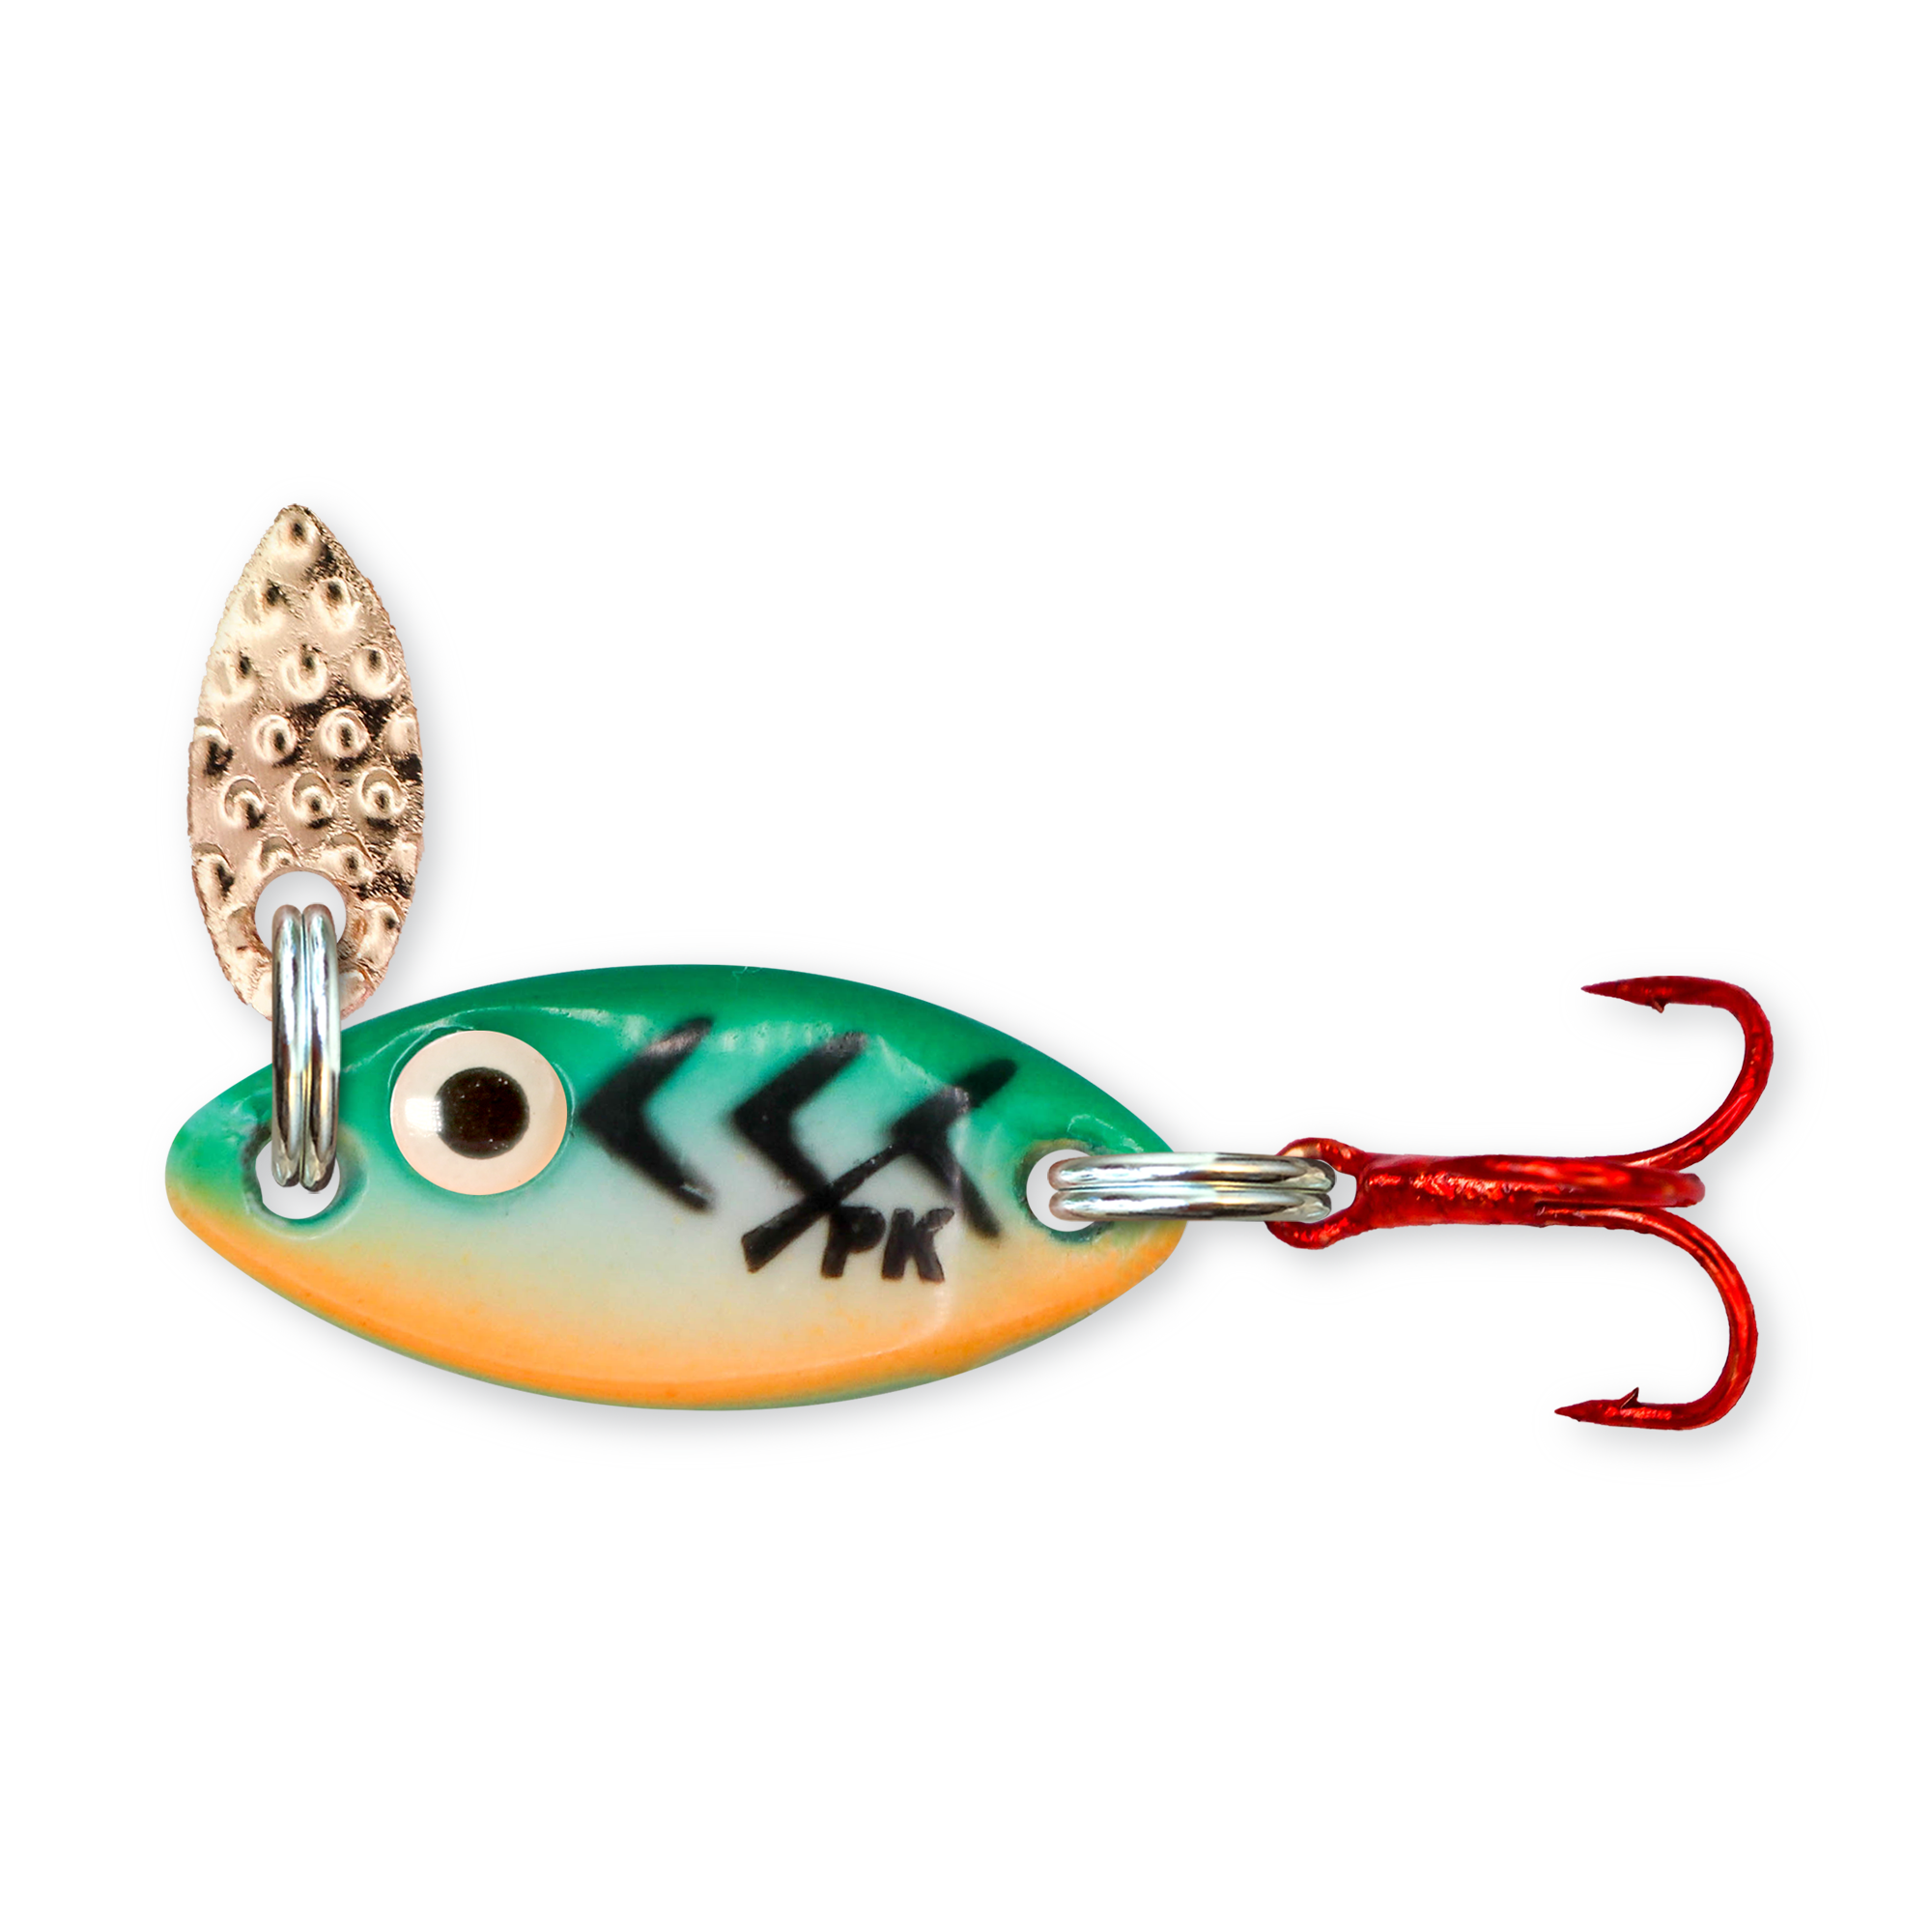  AGadget Lures Metal Fishing Spoons Kit 10PCS 1.5g-2.5